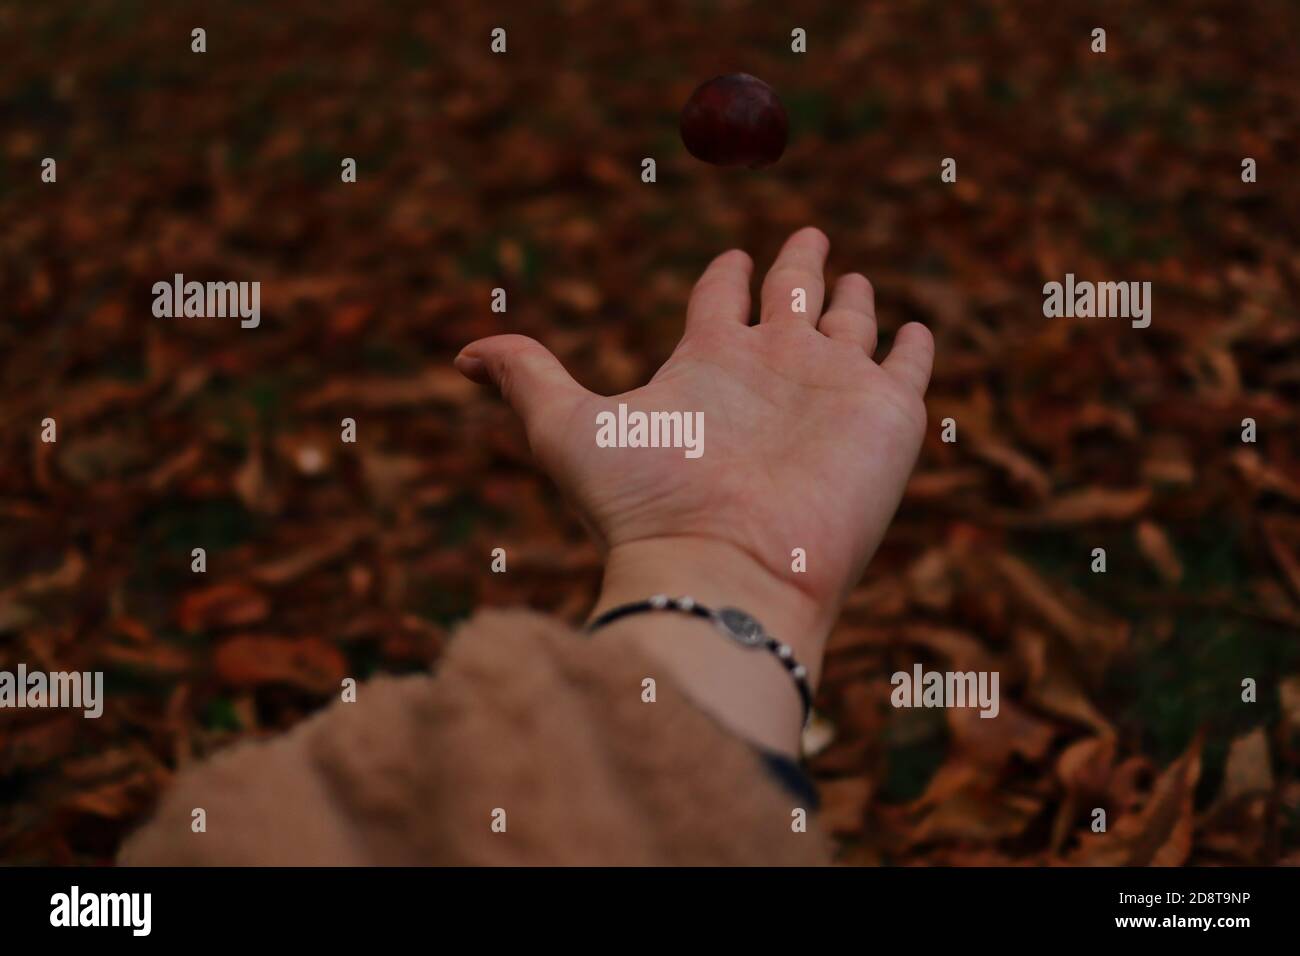 La mano umana getta la castagna marrone in aria nel parco durante la stagione autunnale. Moody Autumnal colori caldi con mano e Castanea Sativa. Foto Stock